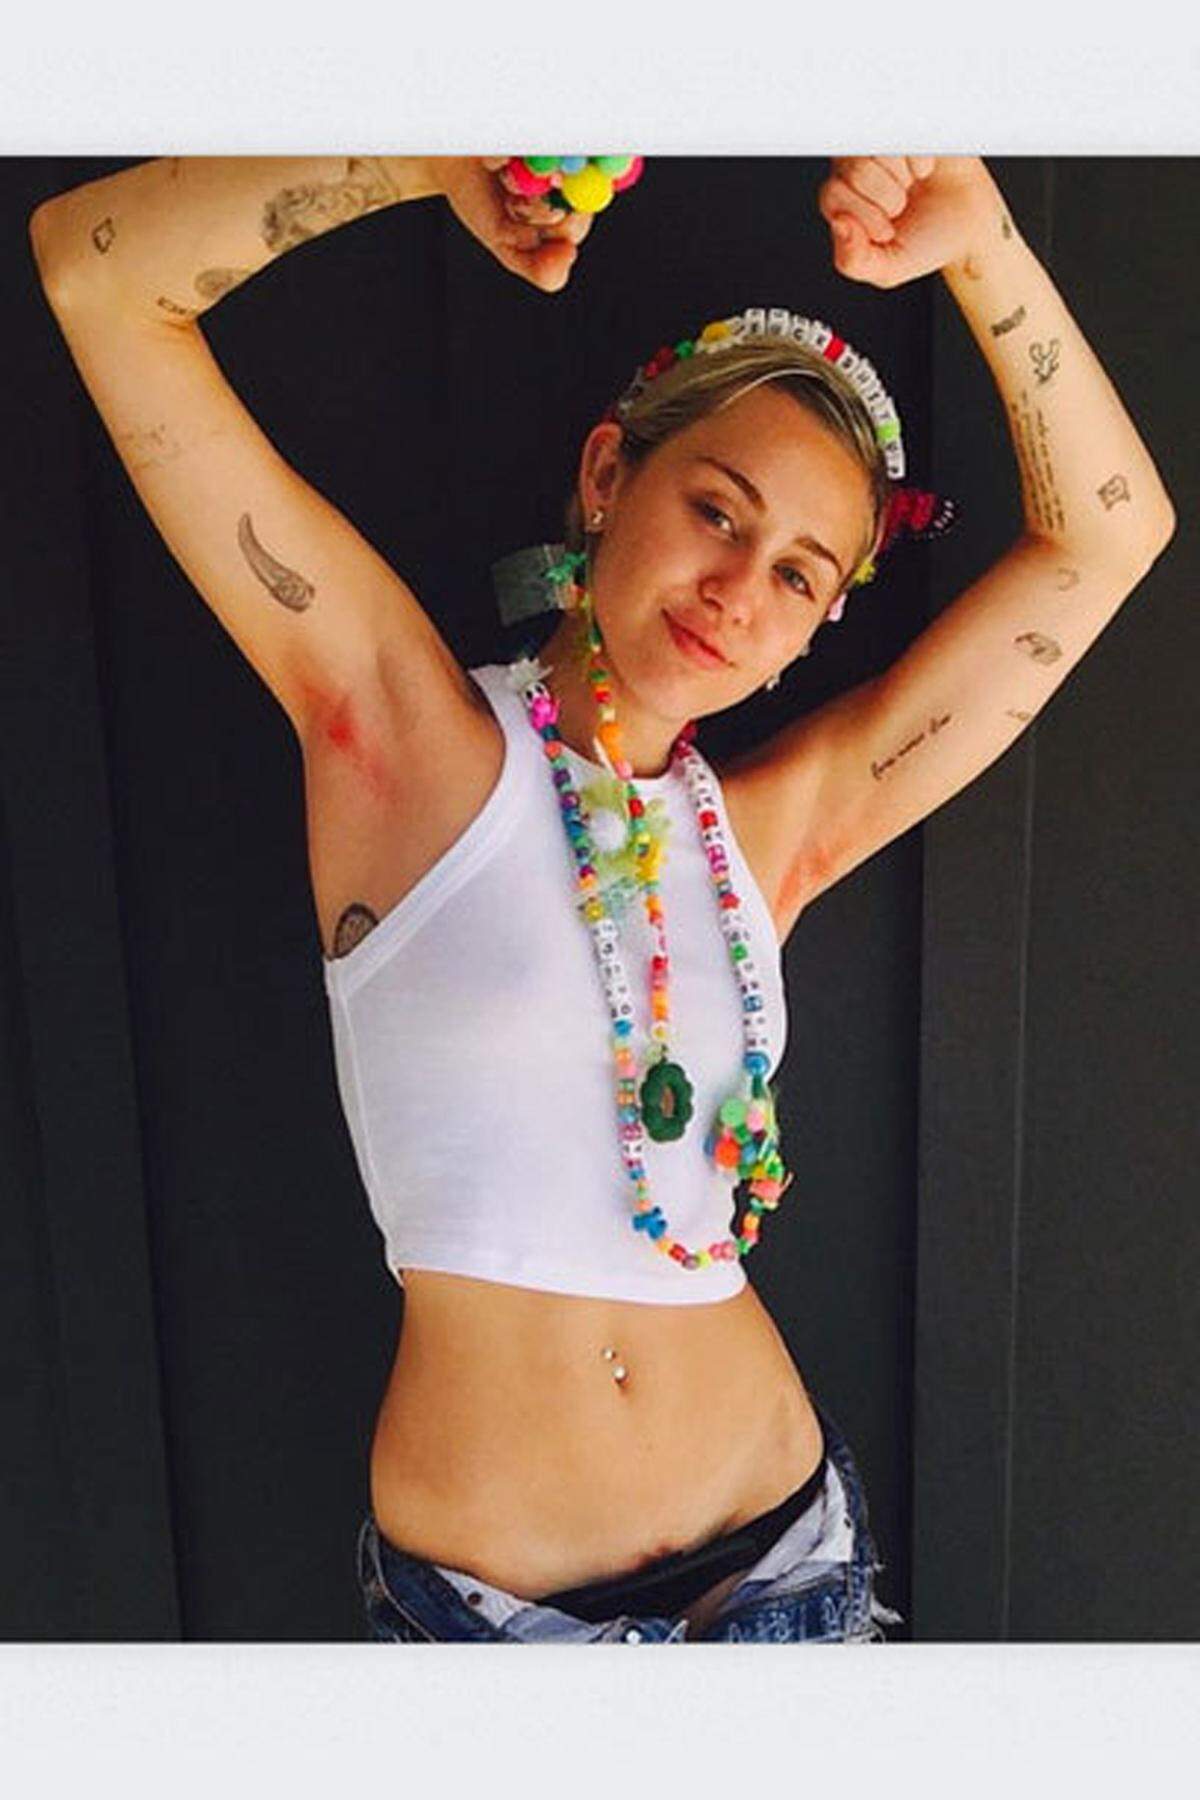 Unter dem Hashtag #FreeYourPit, also "Befreie deine Achsel", machten Promidamen eine Zeit lang auf Instagram mobil. Dazu gehörte auch Miley Cyrus.